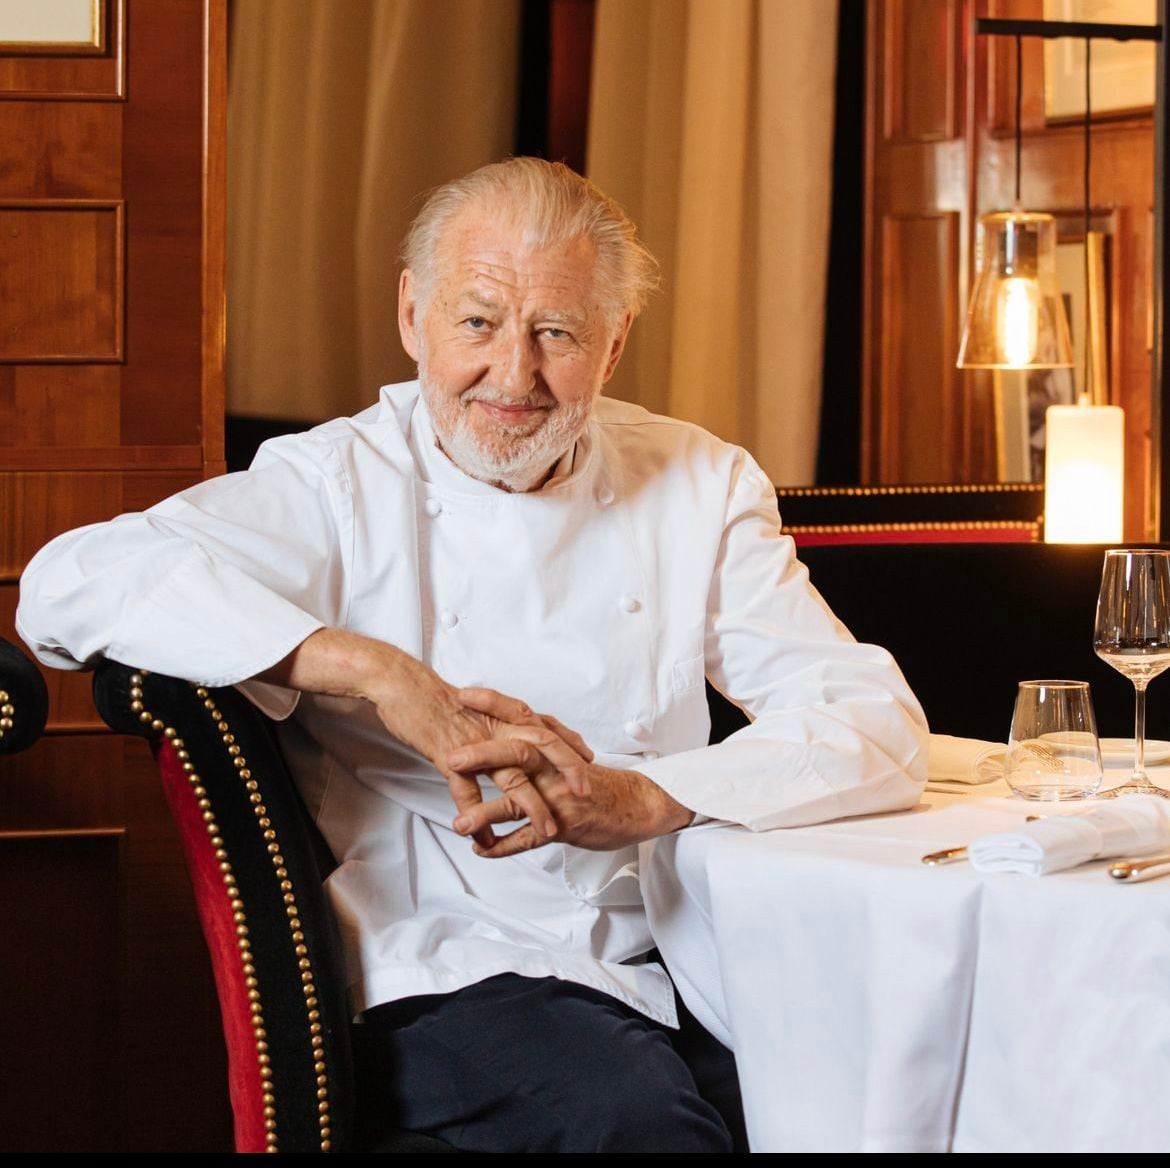 Pierre Gagnaire es uno de los chefs en hotel Barrière Le Fouquet’s. (Foto: Instagram / @fouquets)